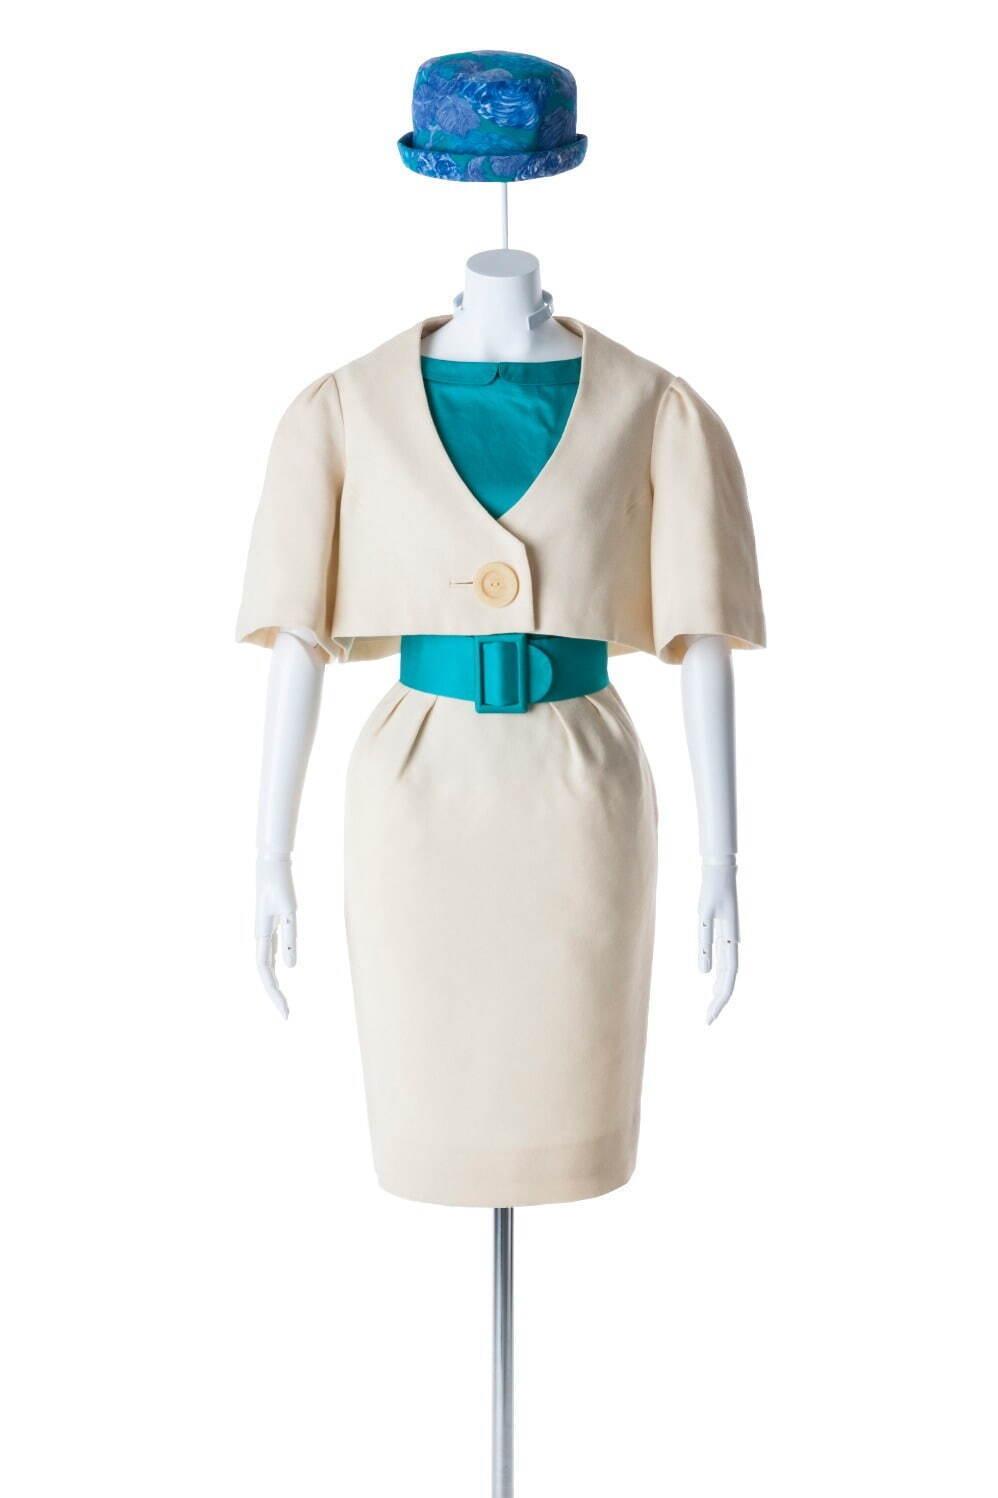 髙田賢三の軌跡を辿る回顧展が文化学園服飾博物館で、1970～80年代パリモードを牽引した服飾作品など コピー